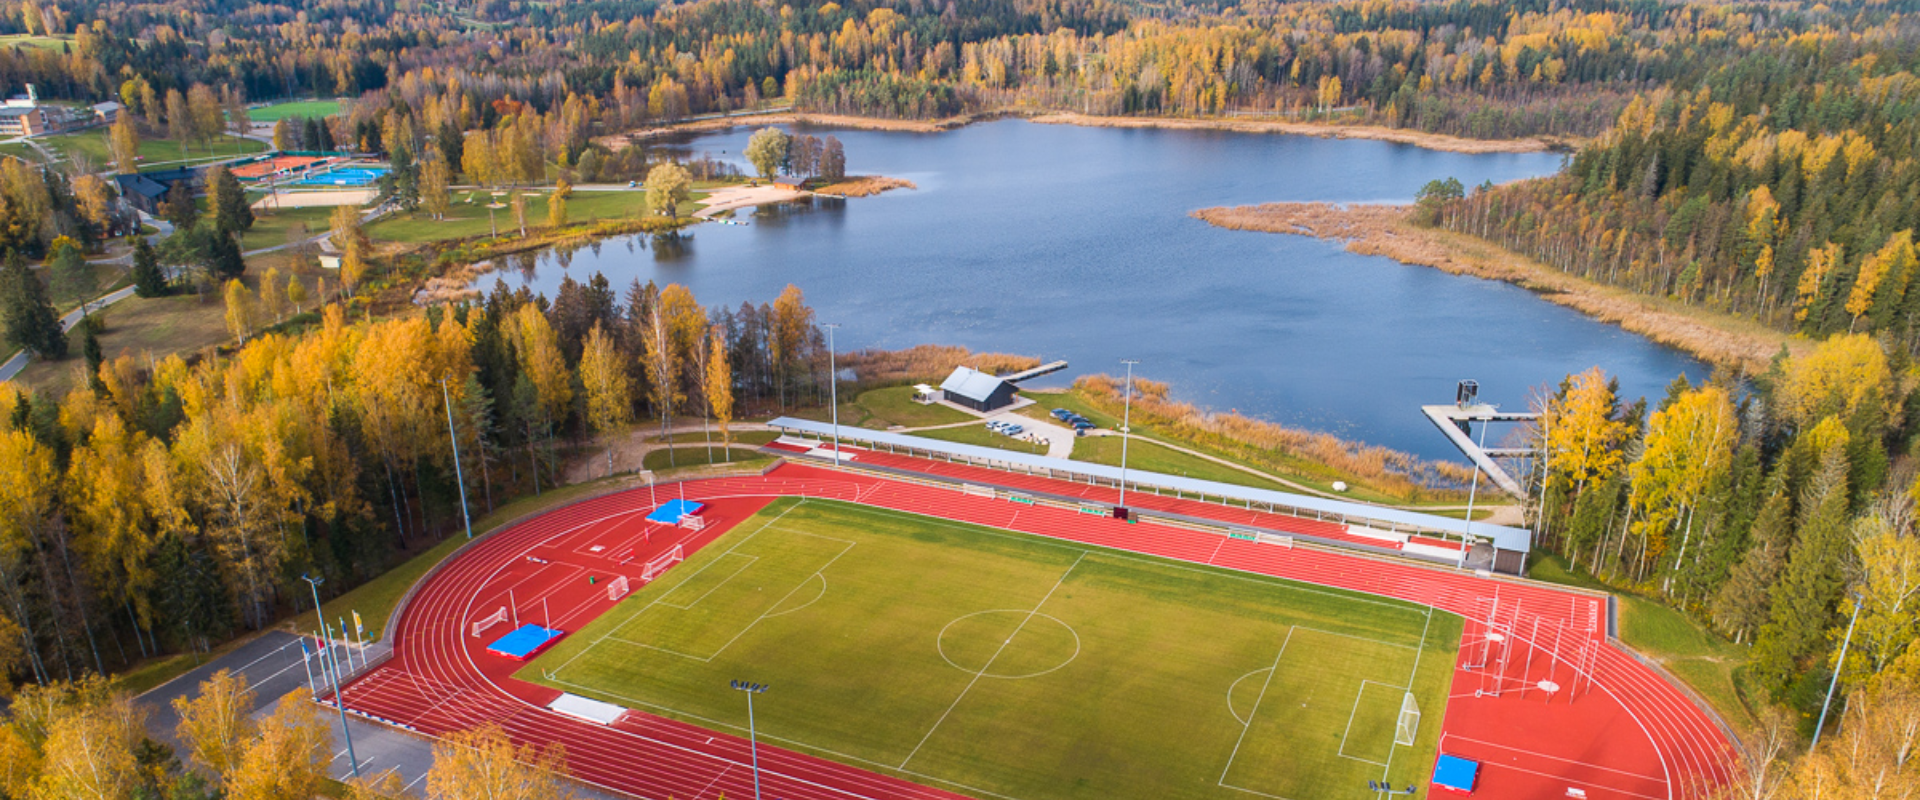 Kääriku Spordikeskus, Kääriku järv ja kergejõustikustaadion